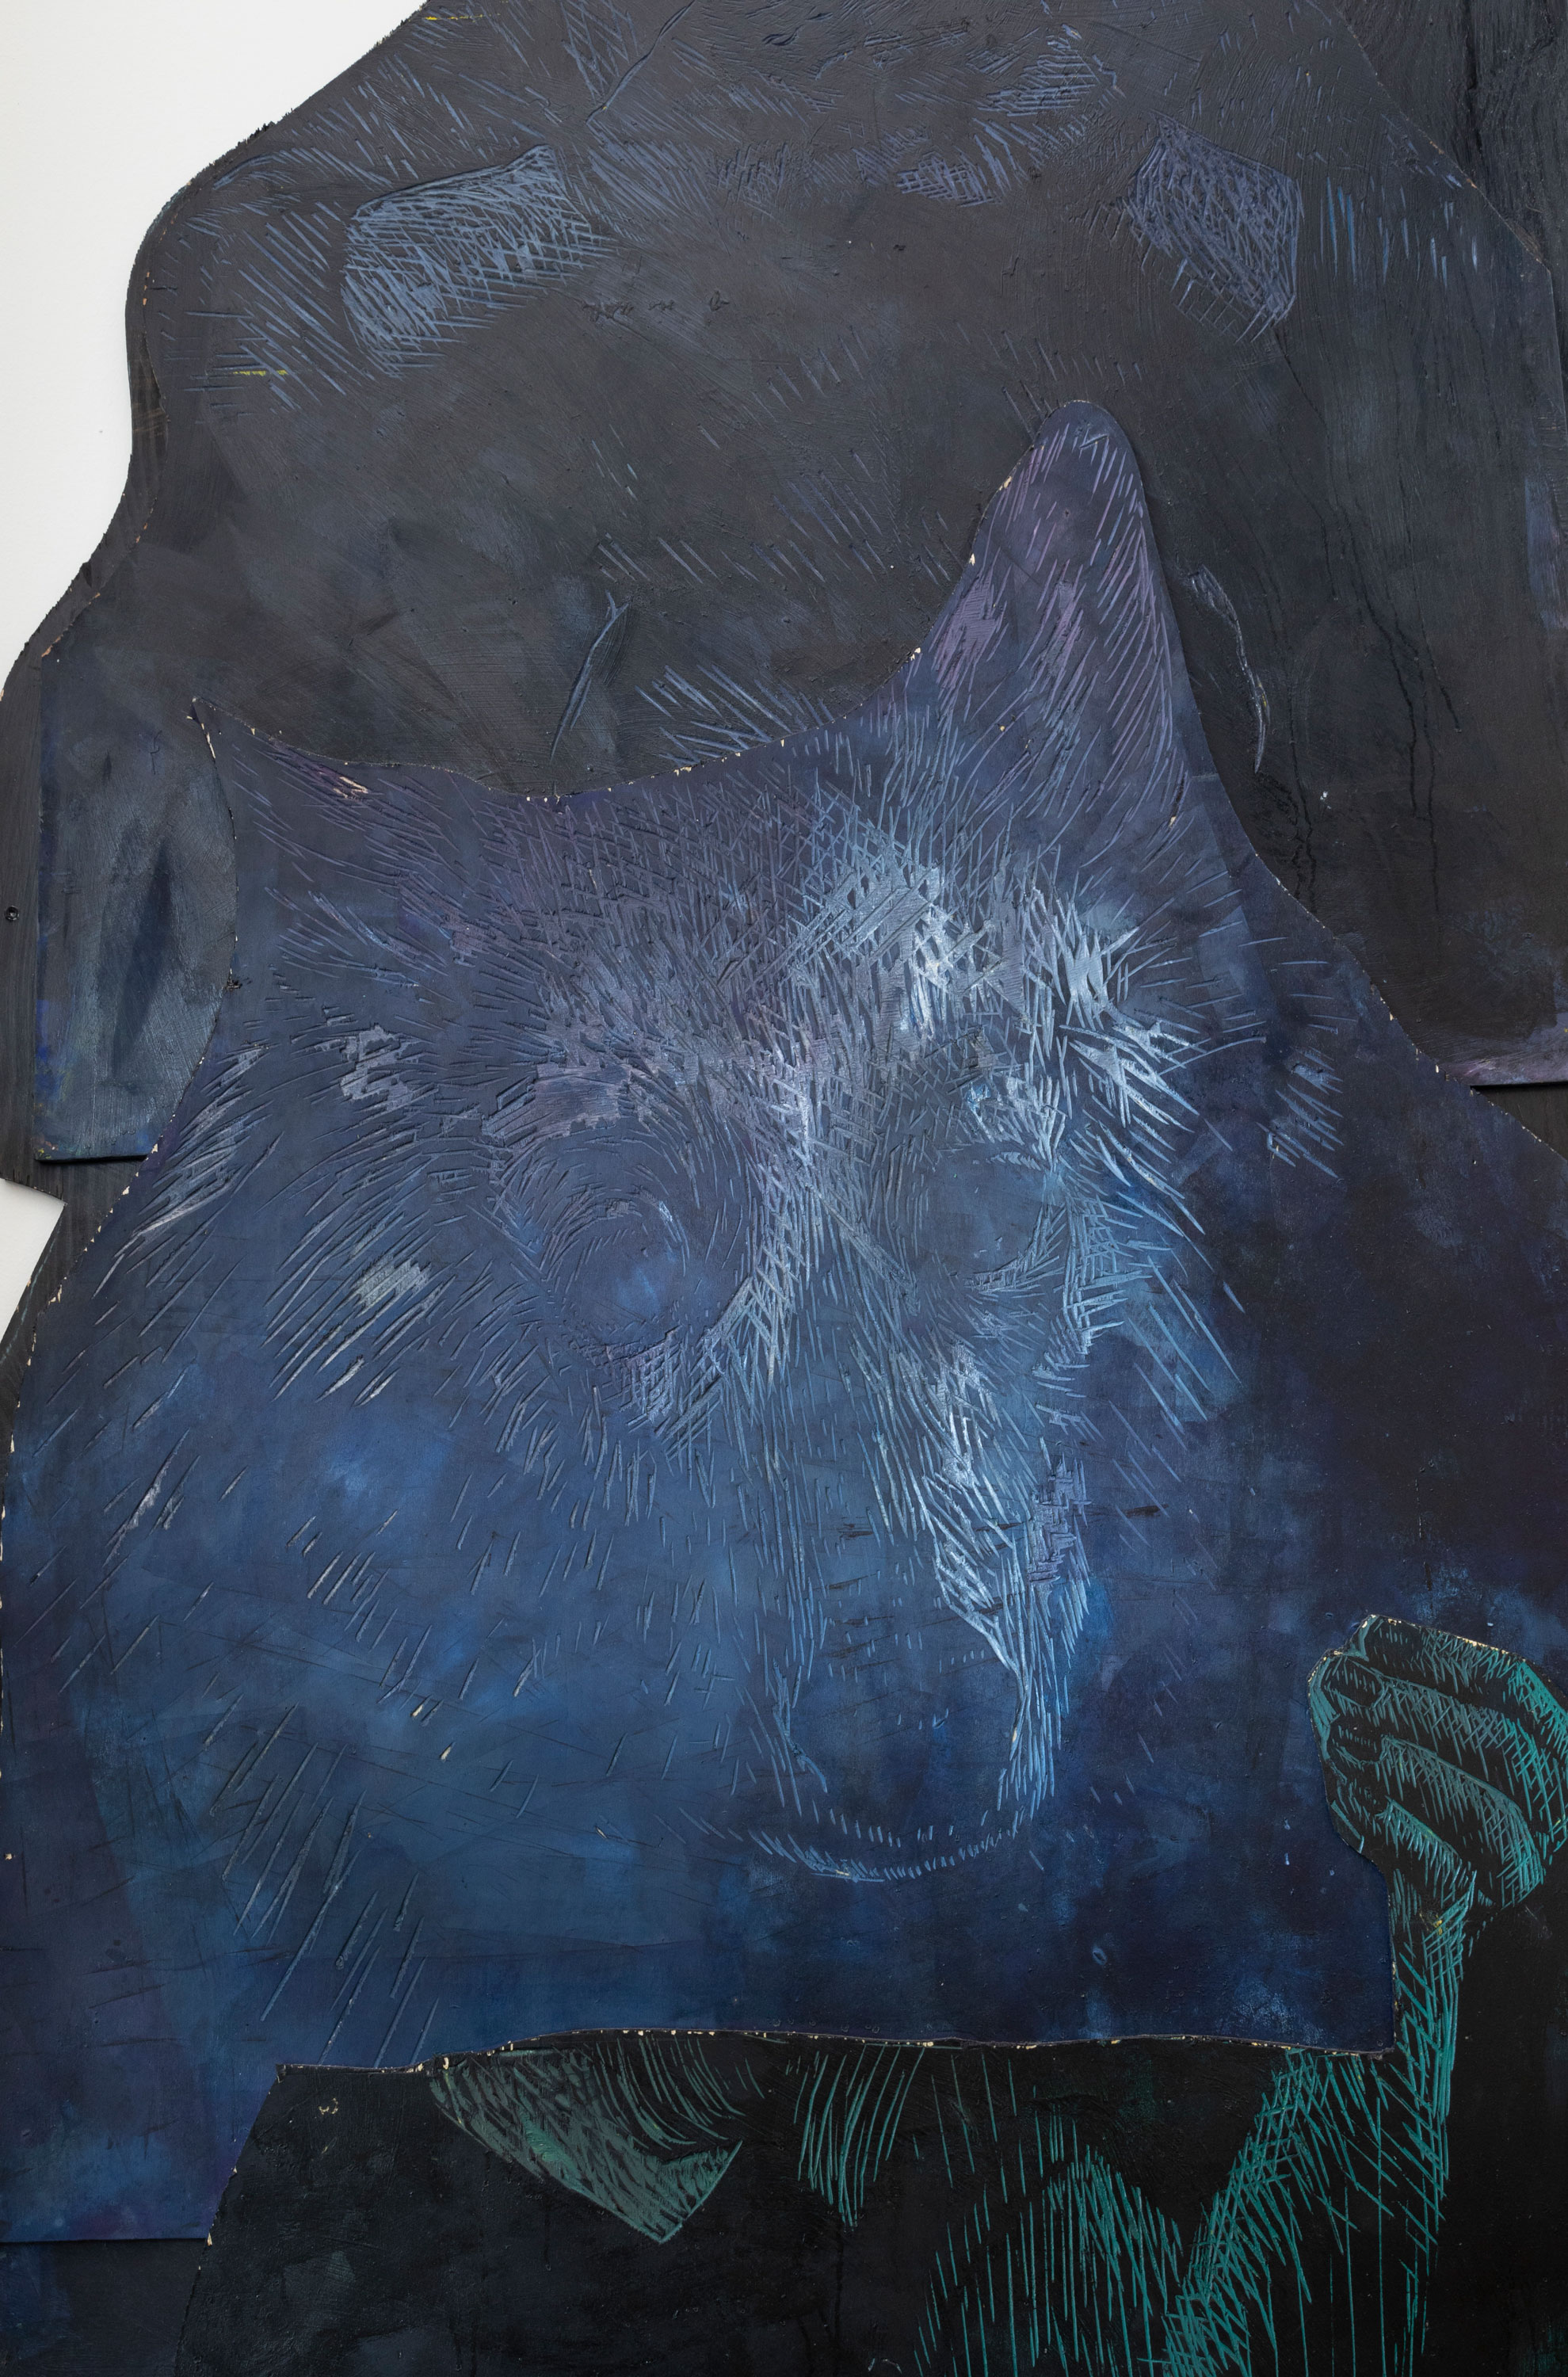 detalj av konstverk med blåmålade träskivor med en tecknad hund 